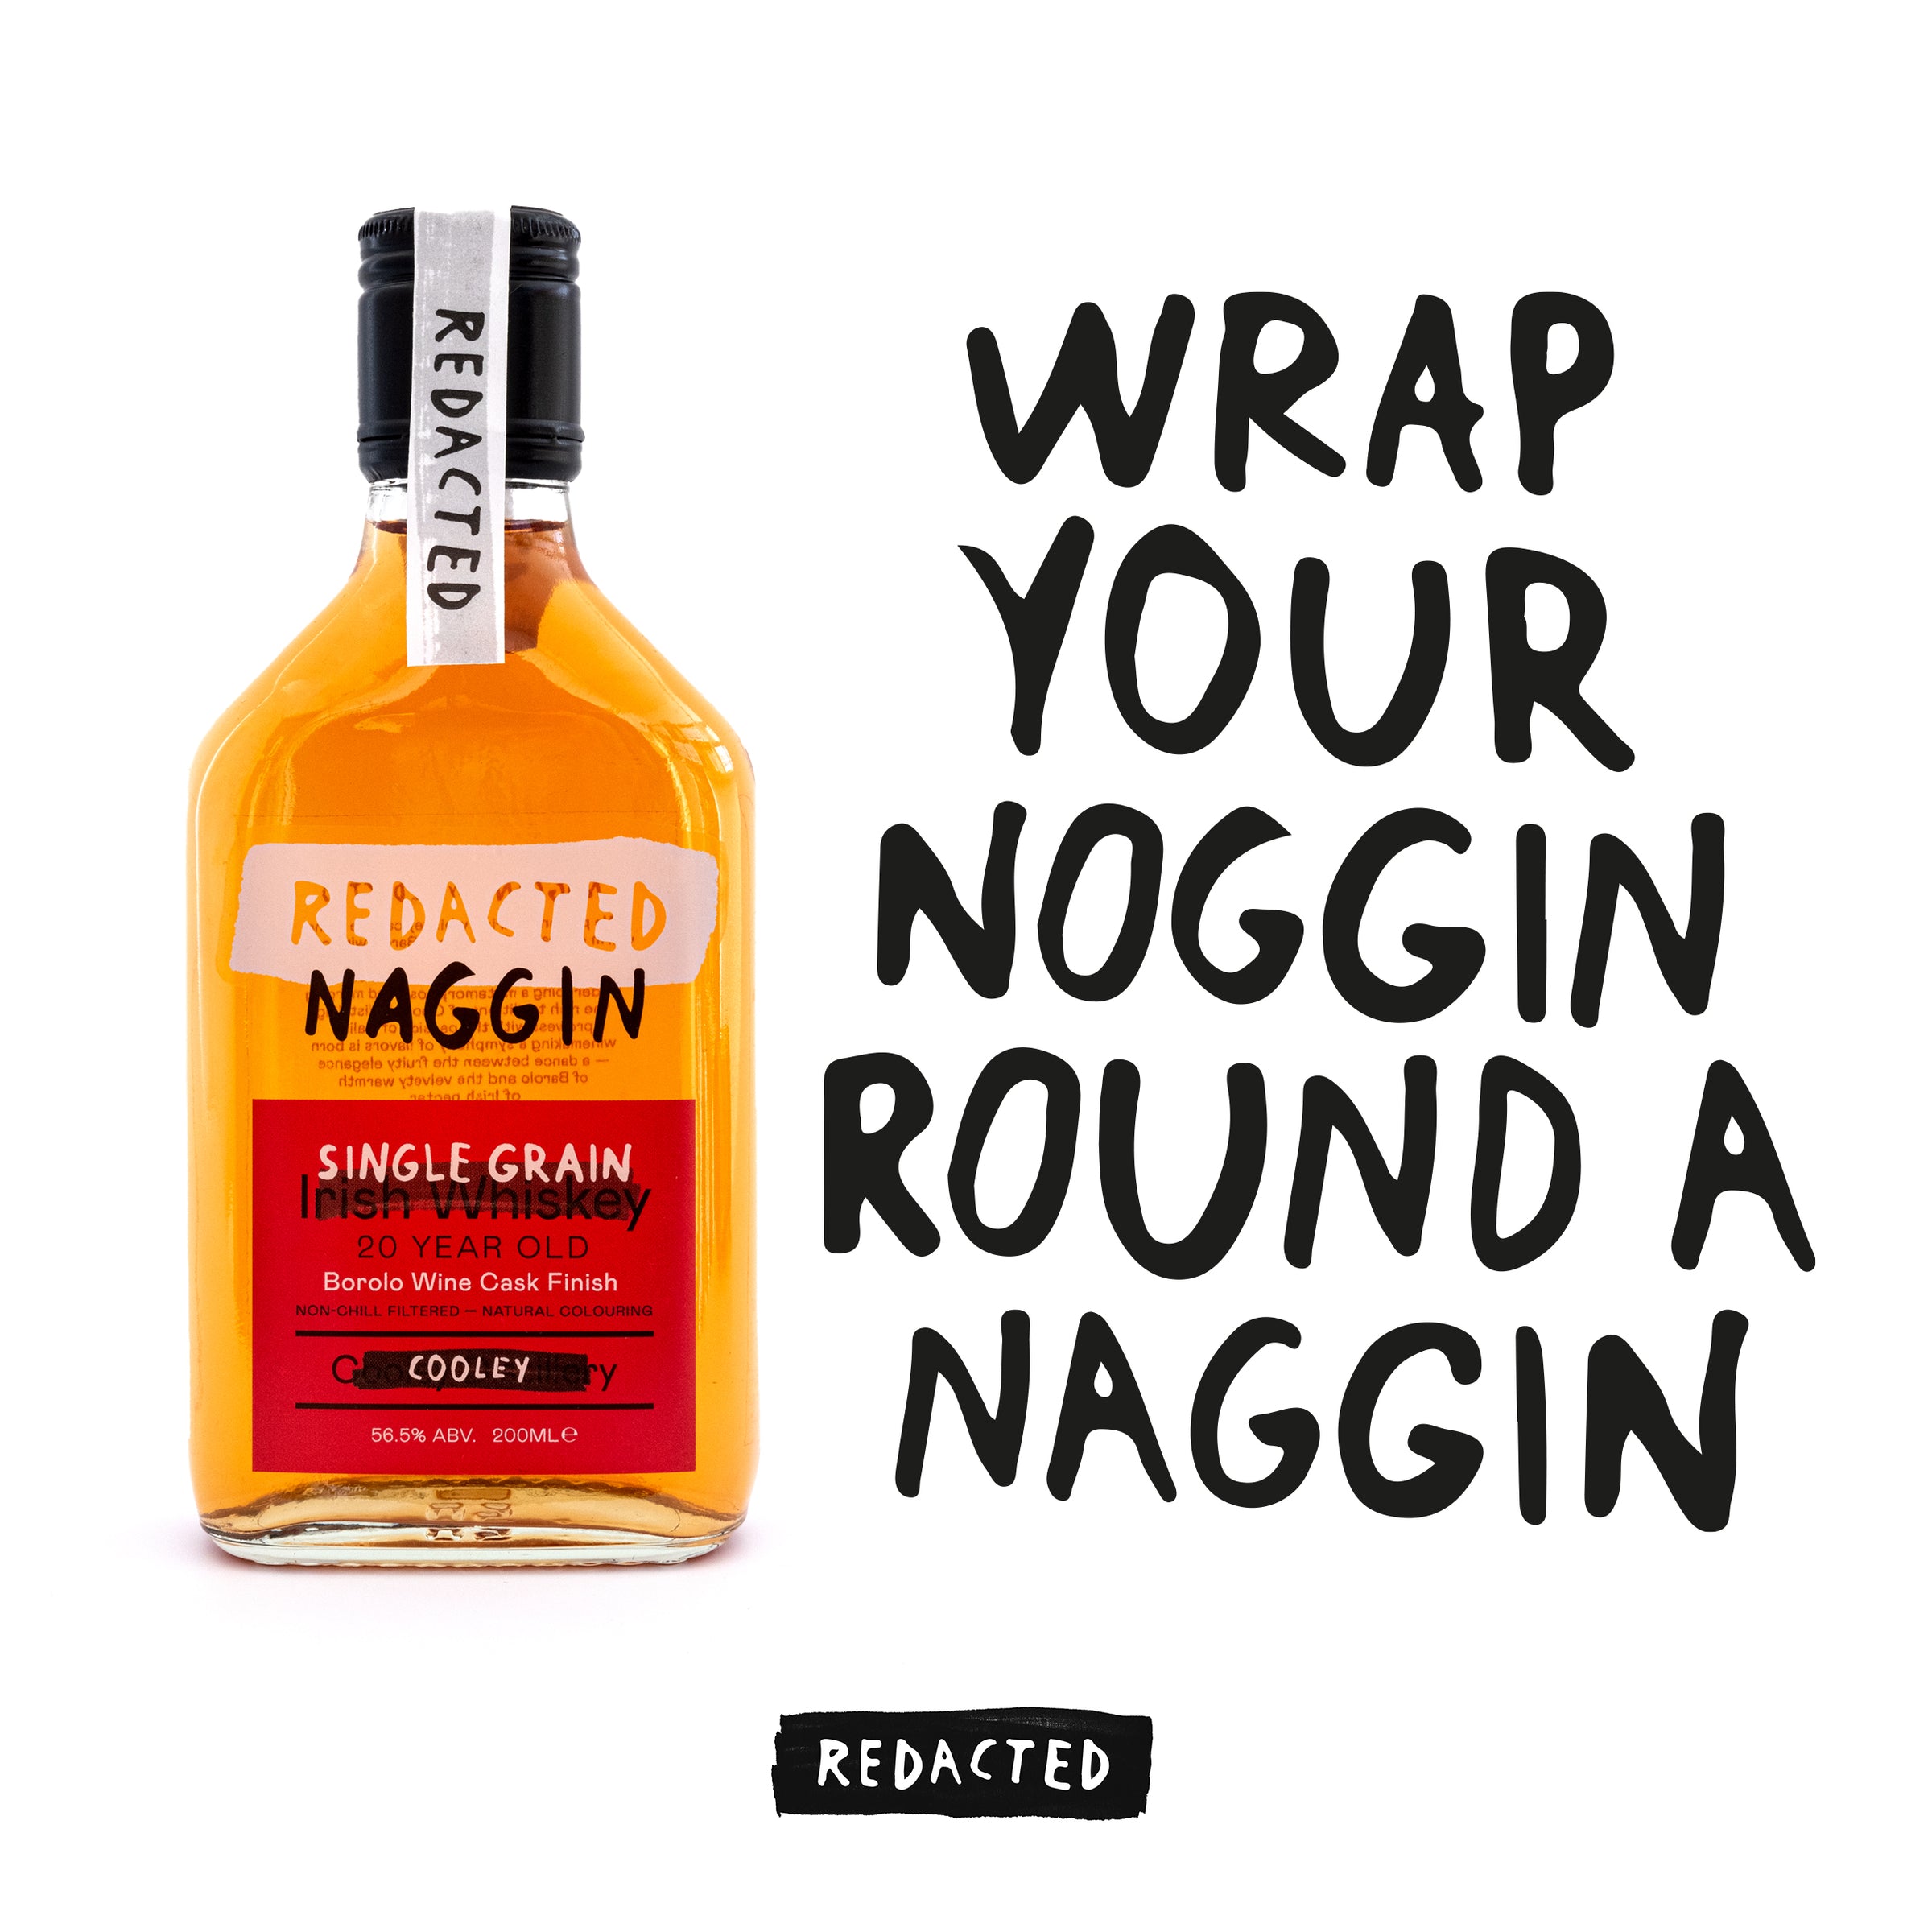 Irish Whiskey Naggin by Redacted Whiskey